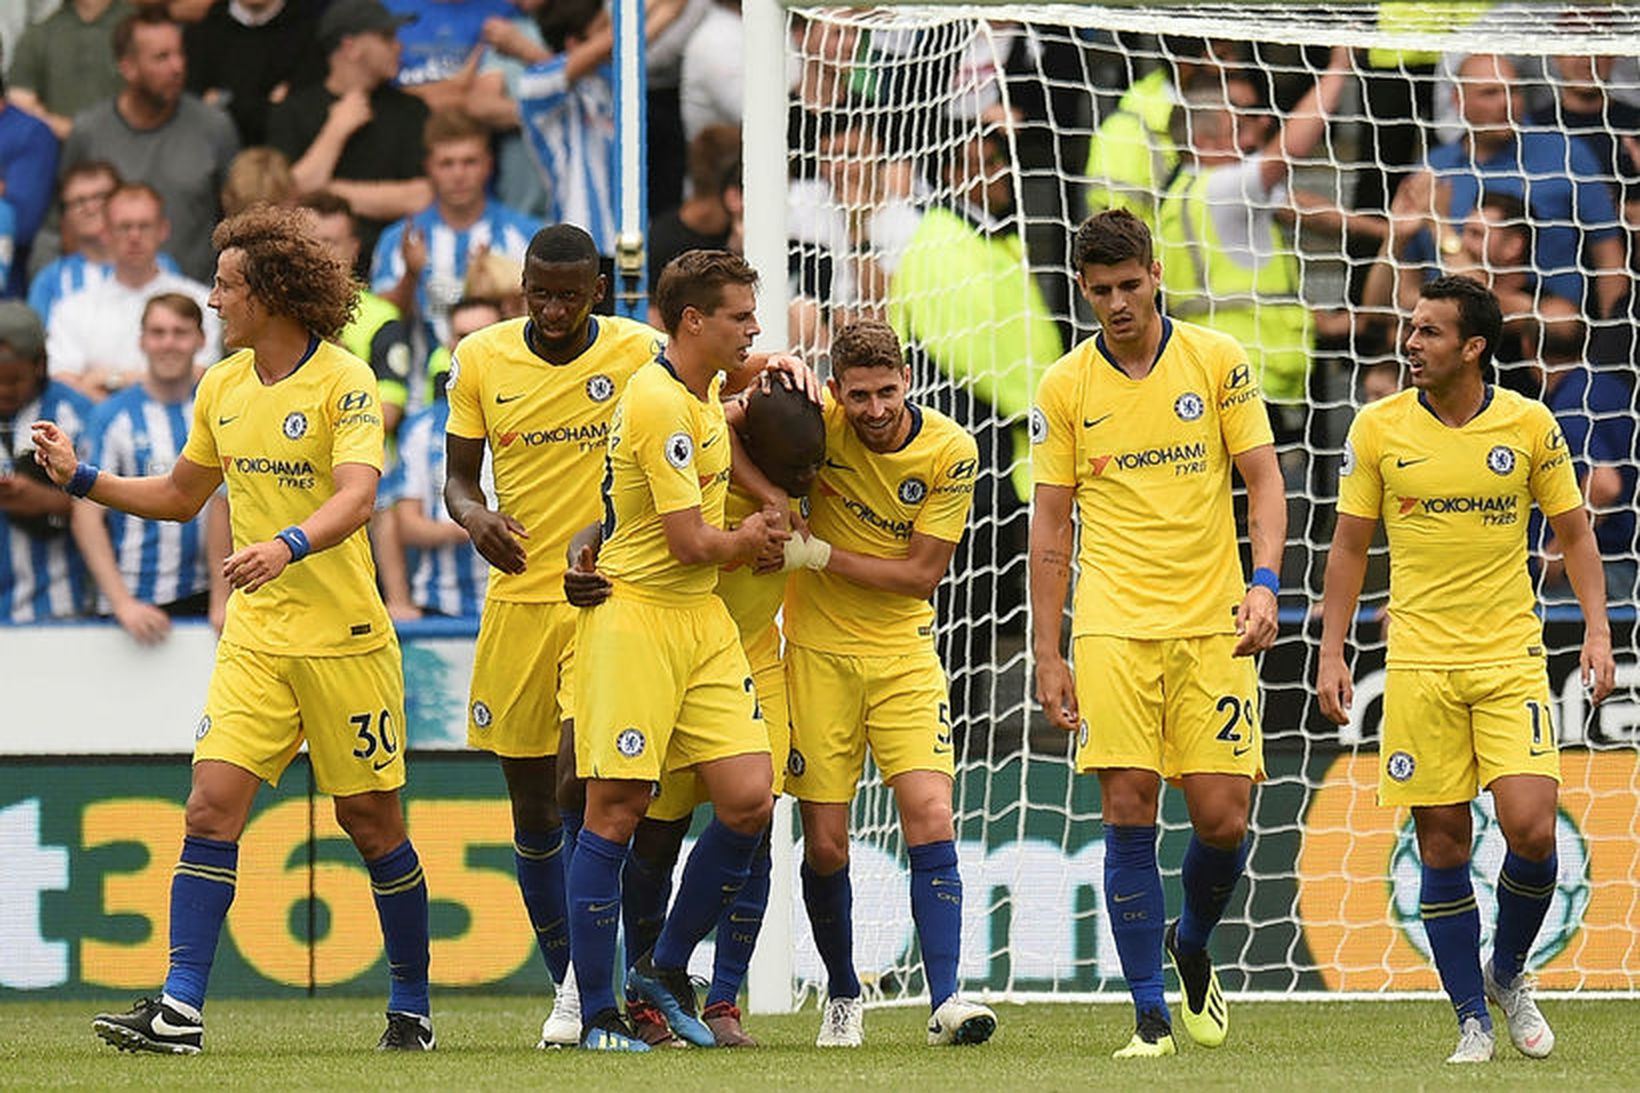 Leikmenn Chelsea fagna marki N'Golo Kante gegn Huddersfield í dag.